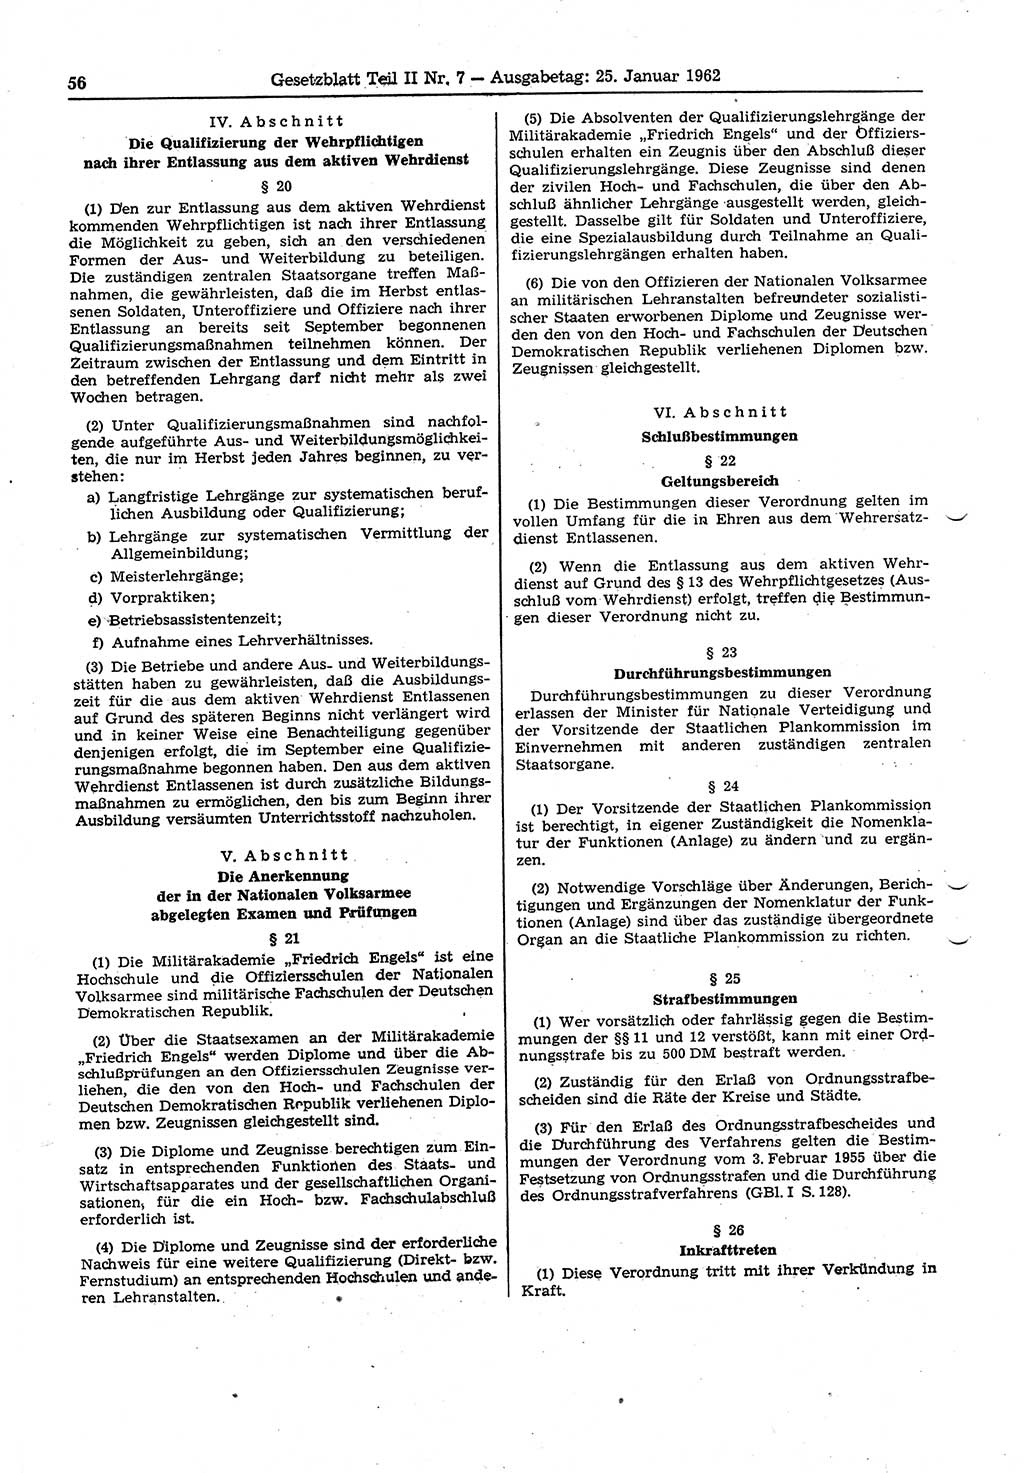 Gesetzblatt (GBl.) der Deutschen Demokratischen Republik (DDR) Teil ⅠⅠ 1962, Seite 56 (GBl. DDR ⅠⅠ 1962, S. 56)